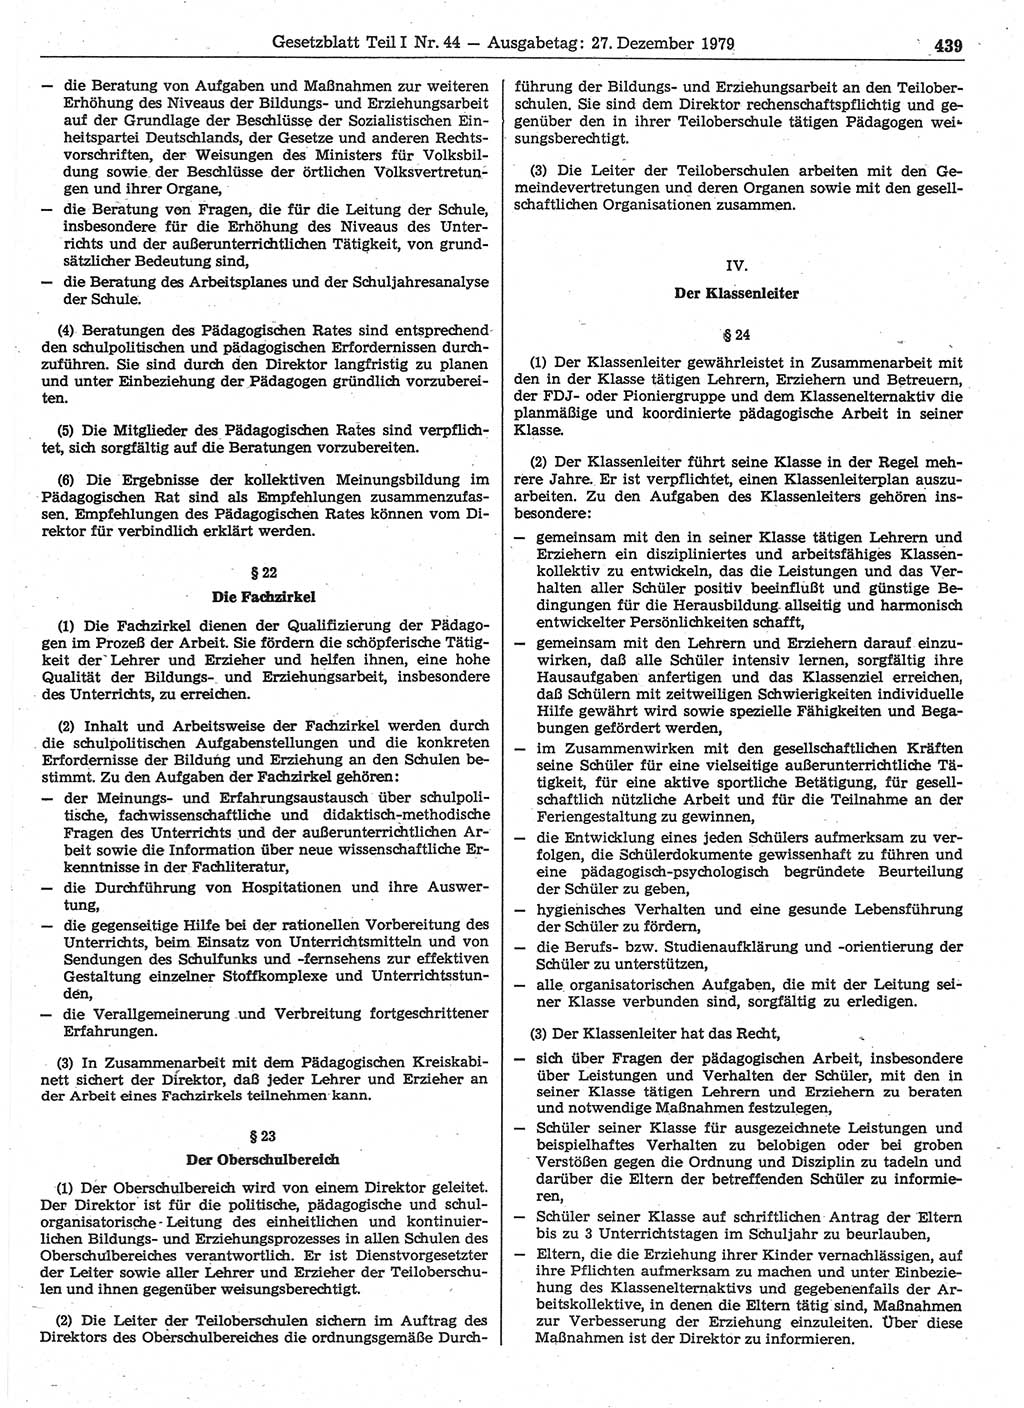 Gesetzblatt (GBl.) der Deutschen Demokratischen Republik (DDR) Teil Ⅰ 1979, Seite 439 (GBl. DDR Ⅰ 1979, S. 439)